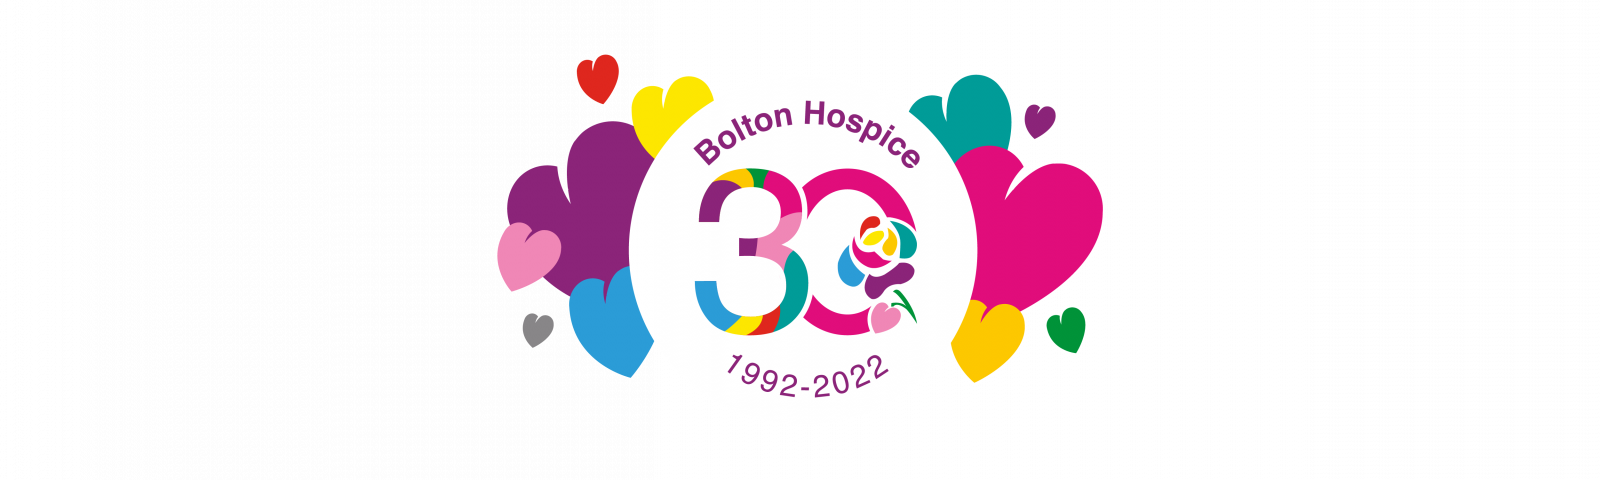 Bolton Hospice 30th Anniversary